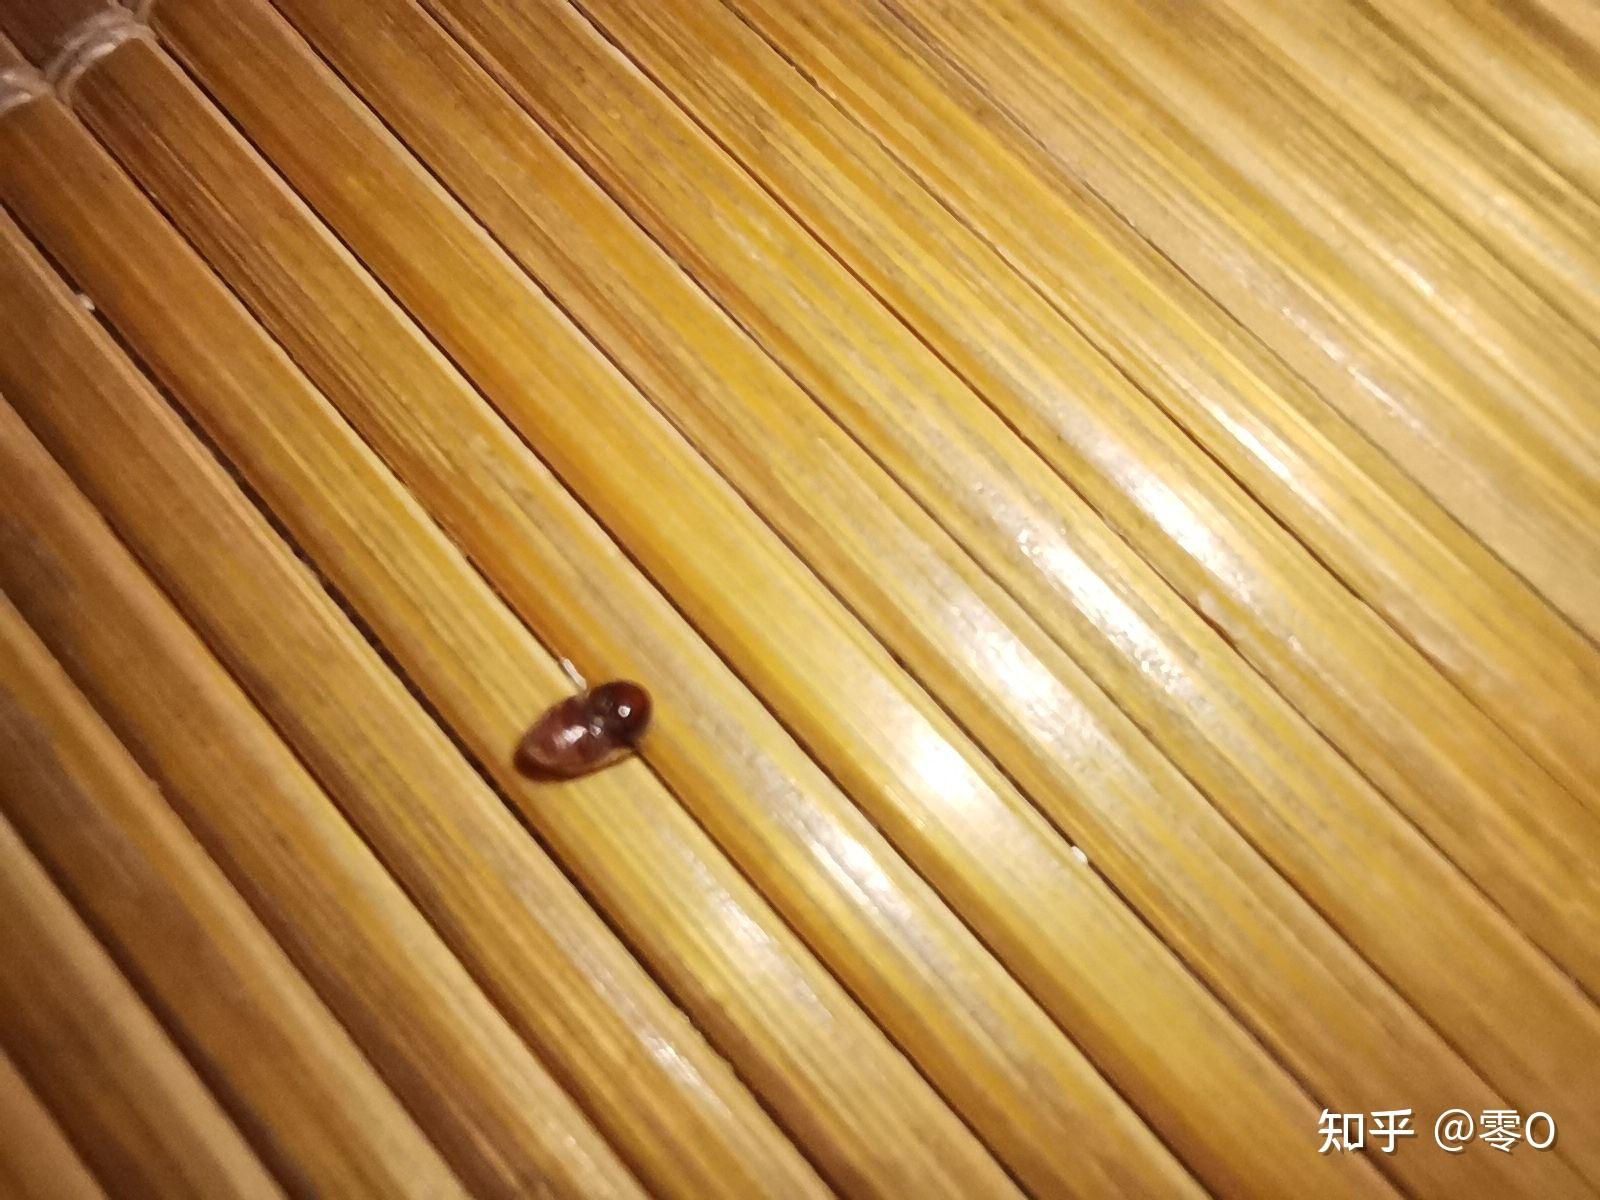 咖啡色椭圆形小虫子图片